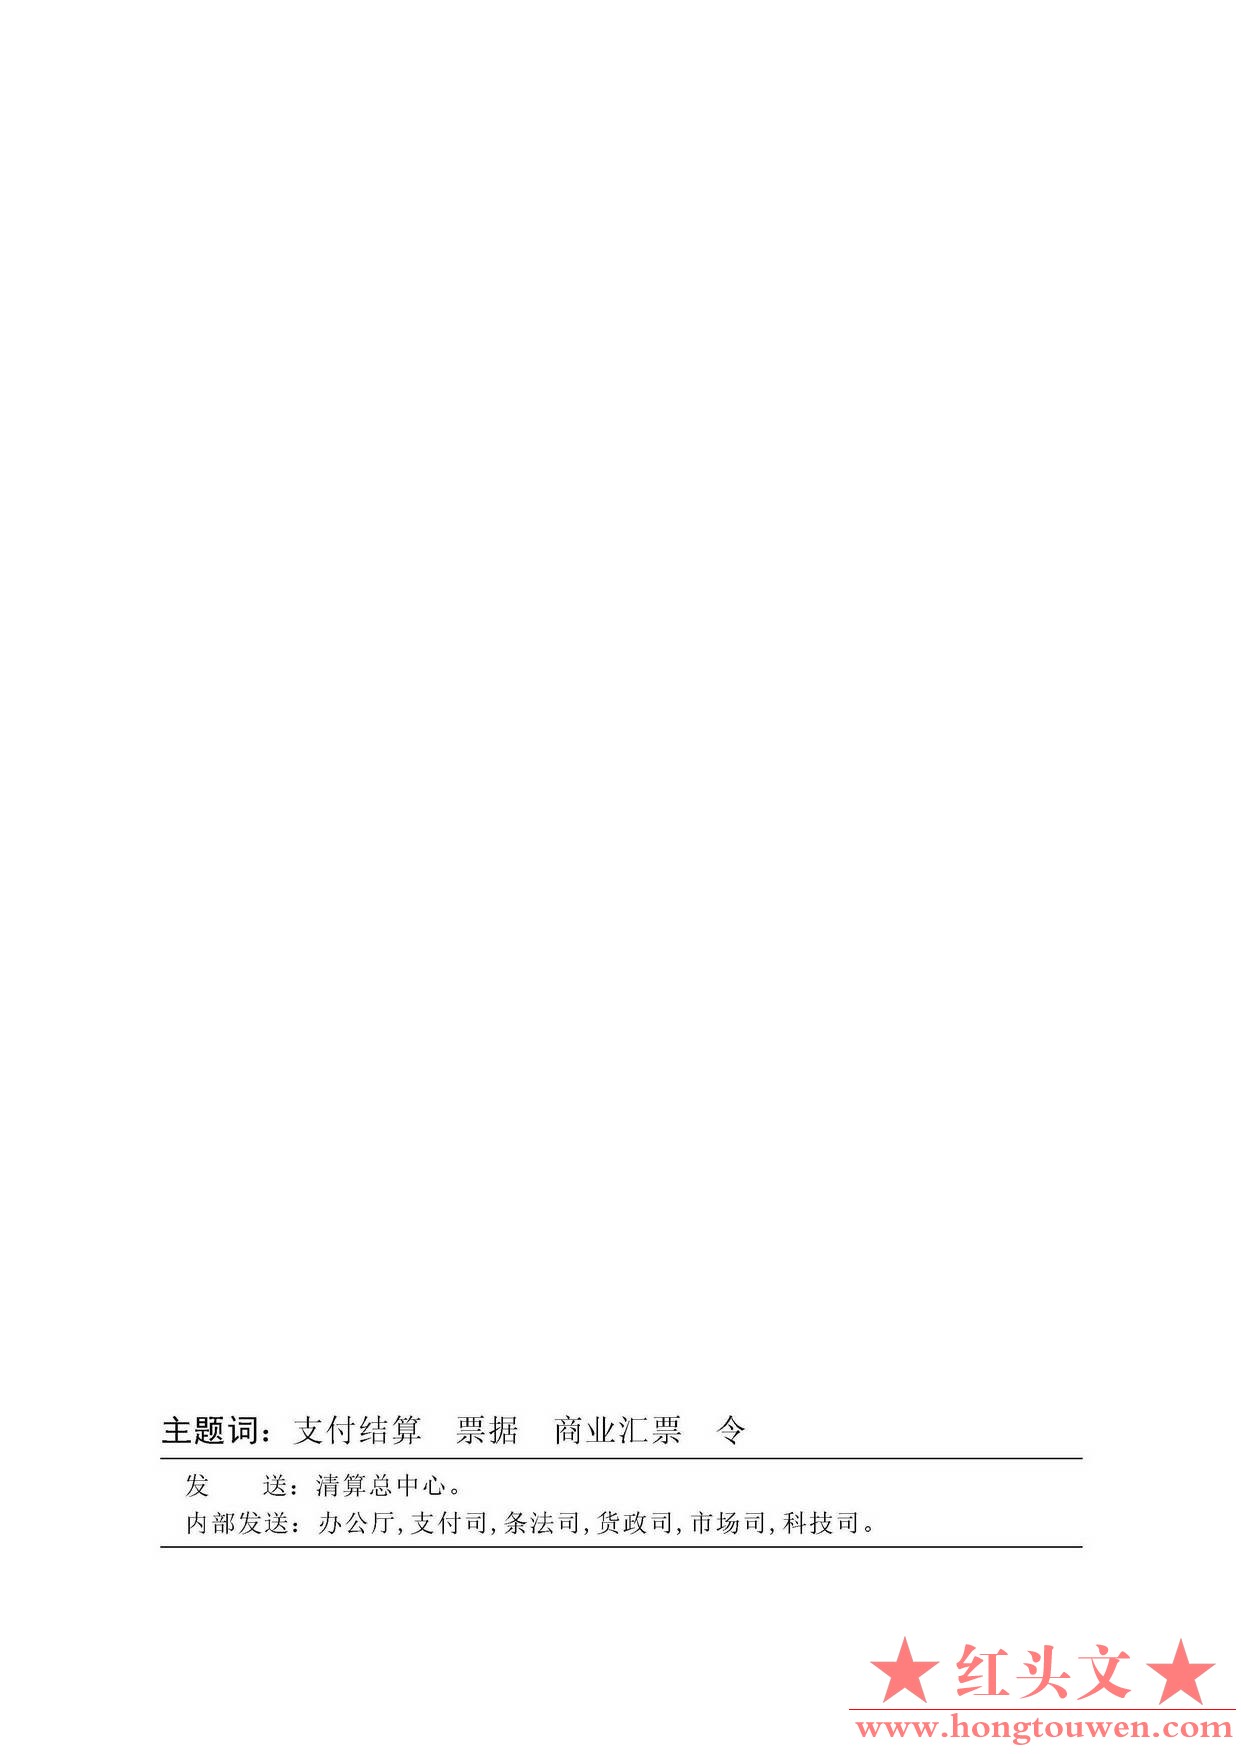 中国人民银行令[2009]2号-电子商业汇票管理办法_页面_22.jpg